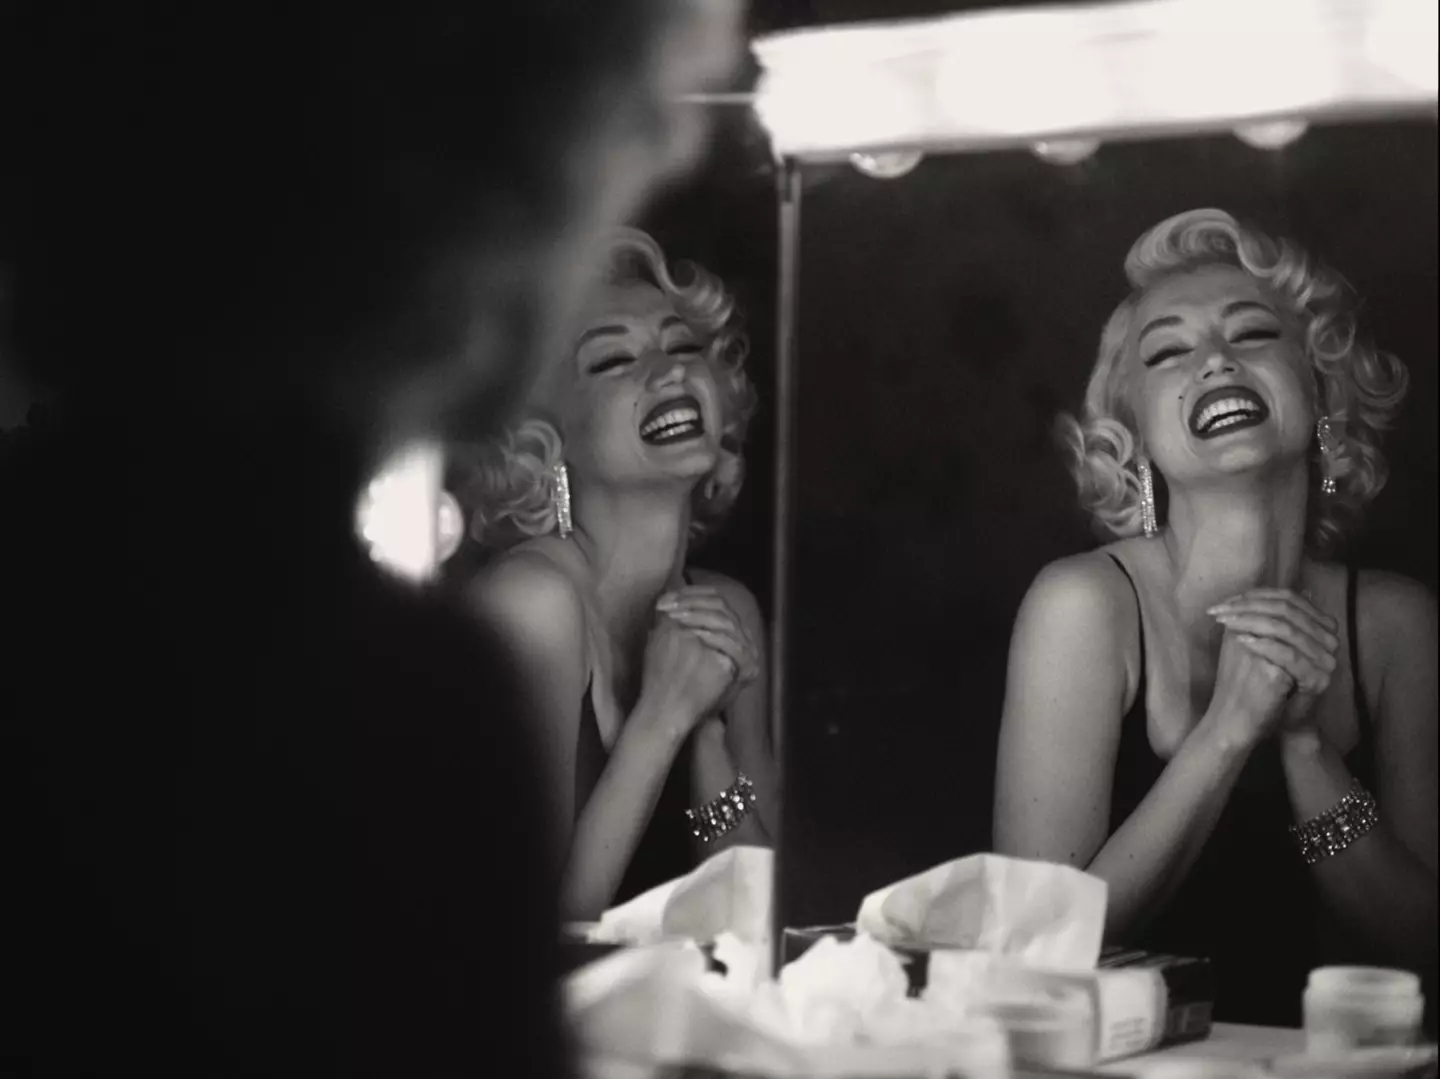 Ana de Armas portrays Marilyn Monroe in 'Blonde'.